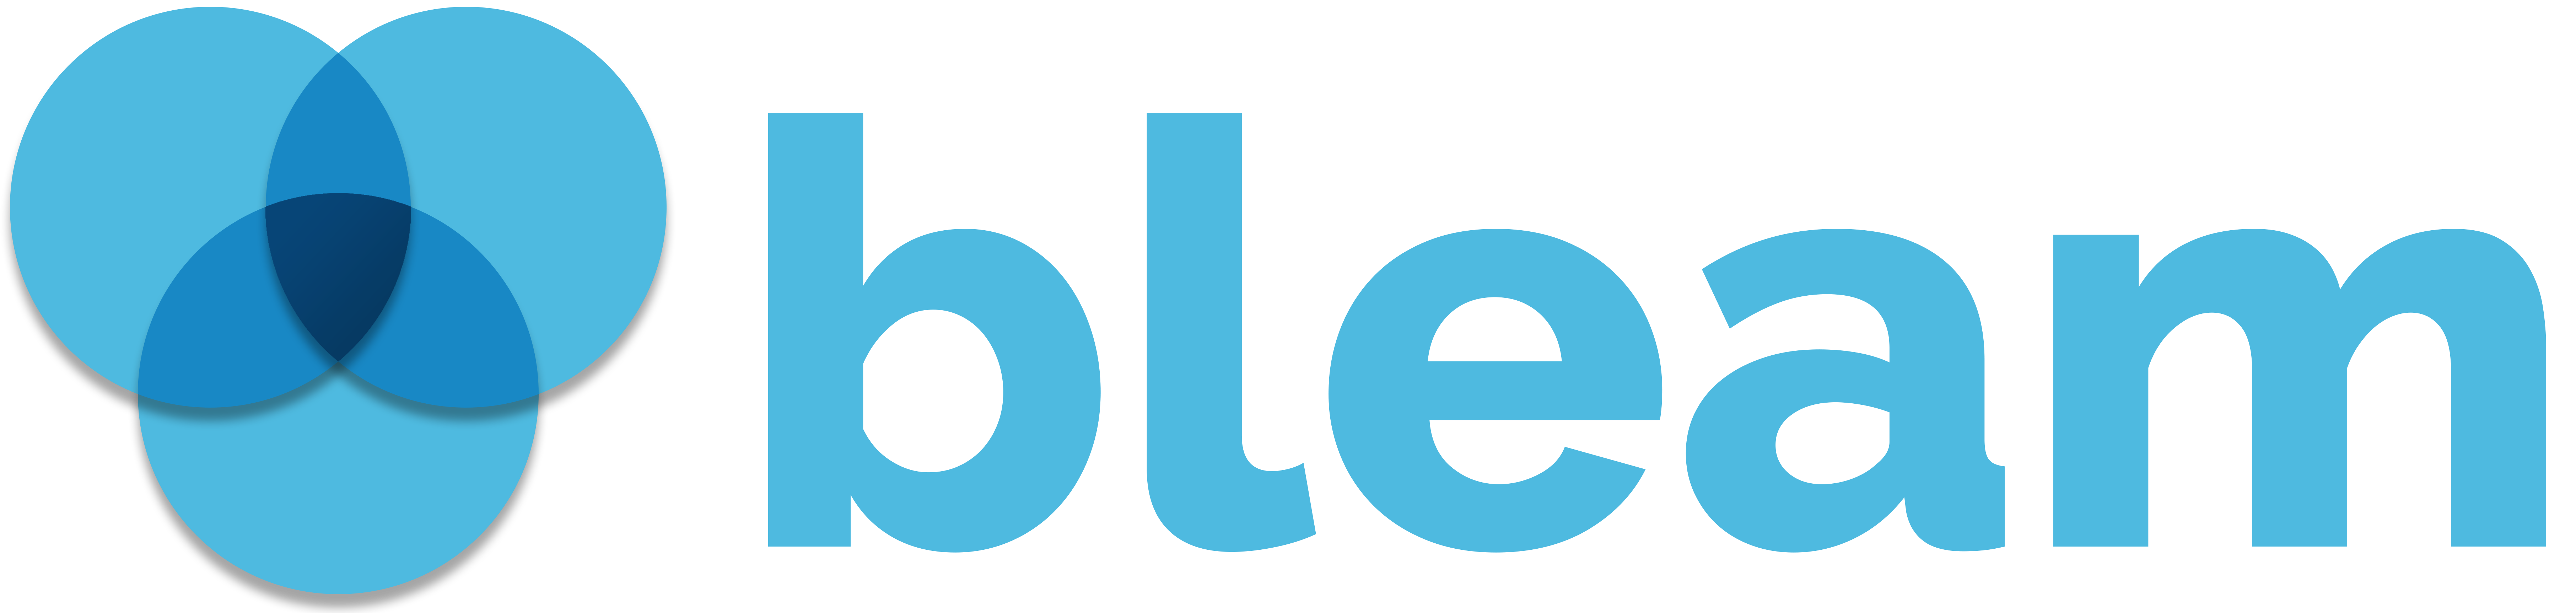 Bleam Logo2